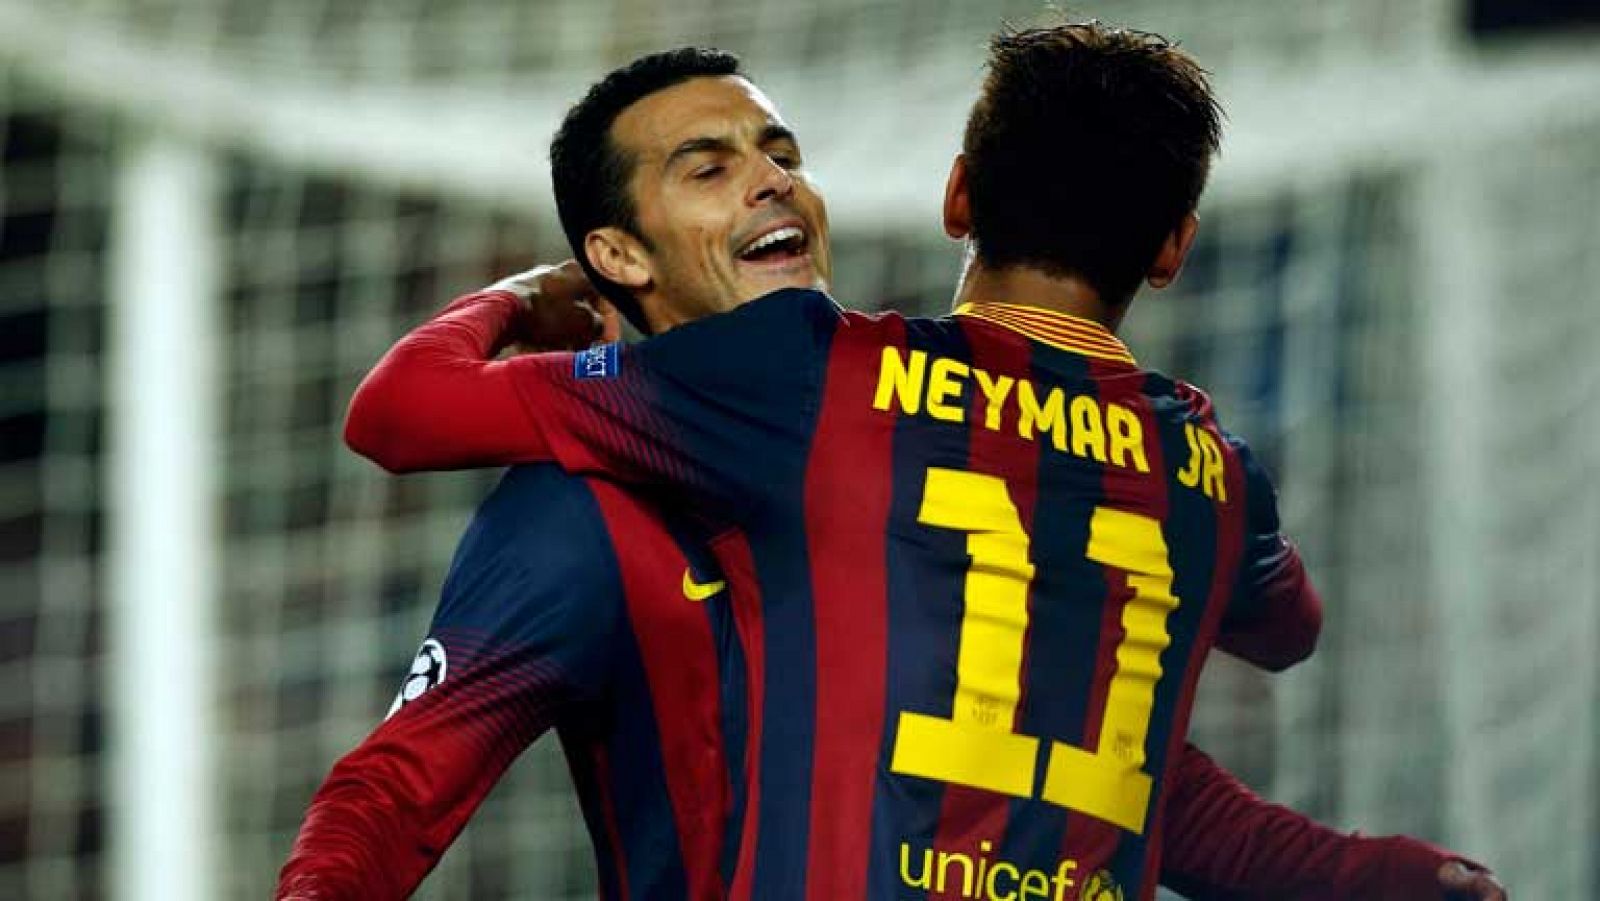 El delantero del FC Barcelona Pedro Rodríguez ha marcado el 2-0 ante el Celtic tras aprovechar una buena asistencia de Neymar.